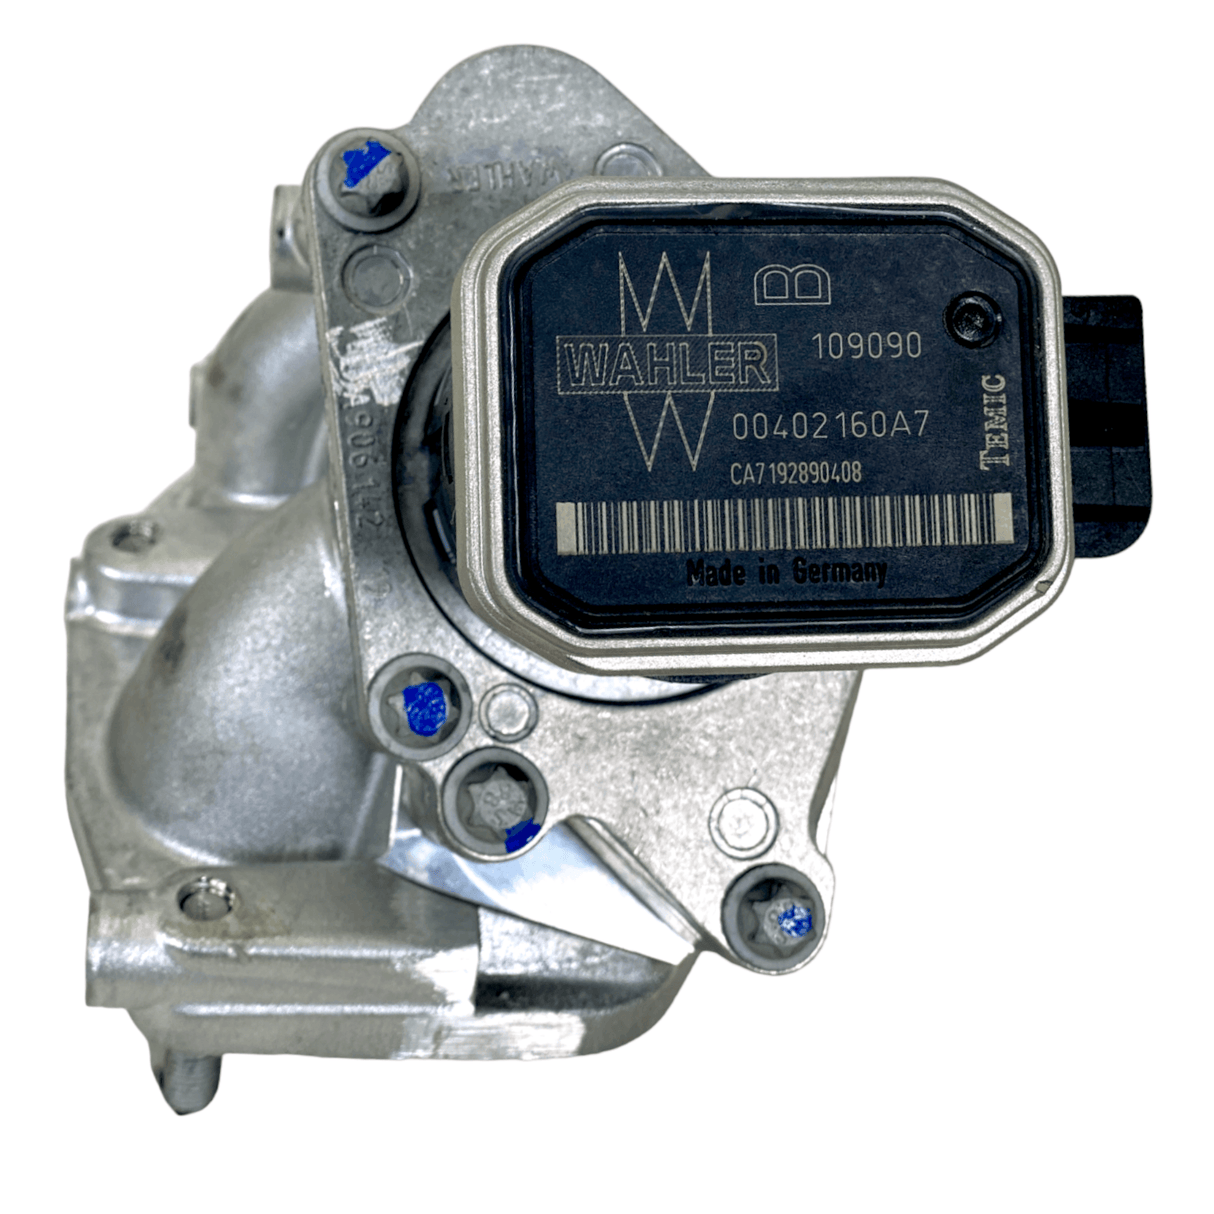 R9061420619 Genuine Detroit Diesel EGR Exhaust Gas Recirculation Valve.